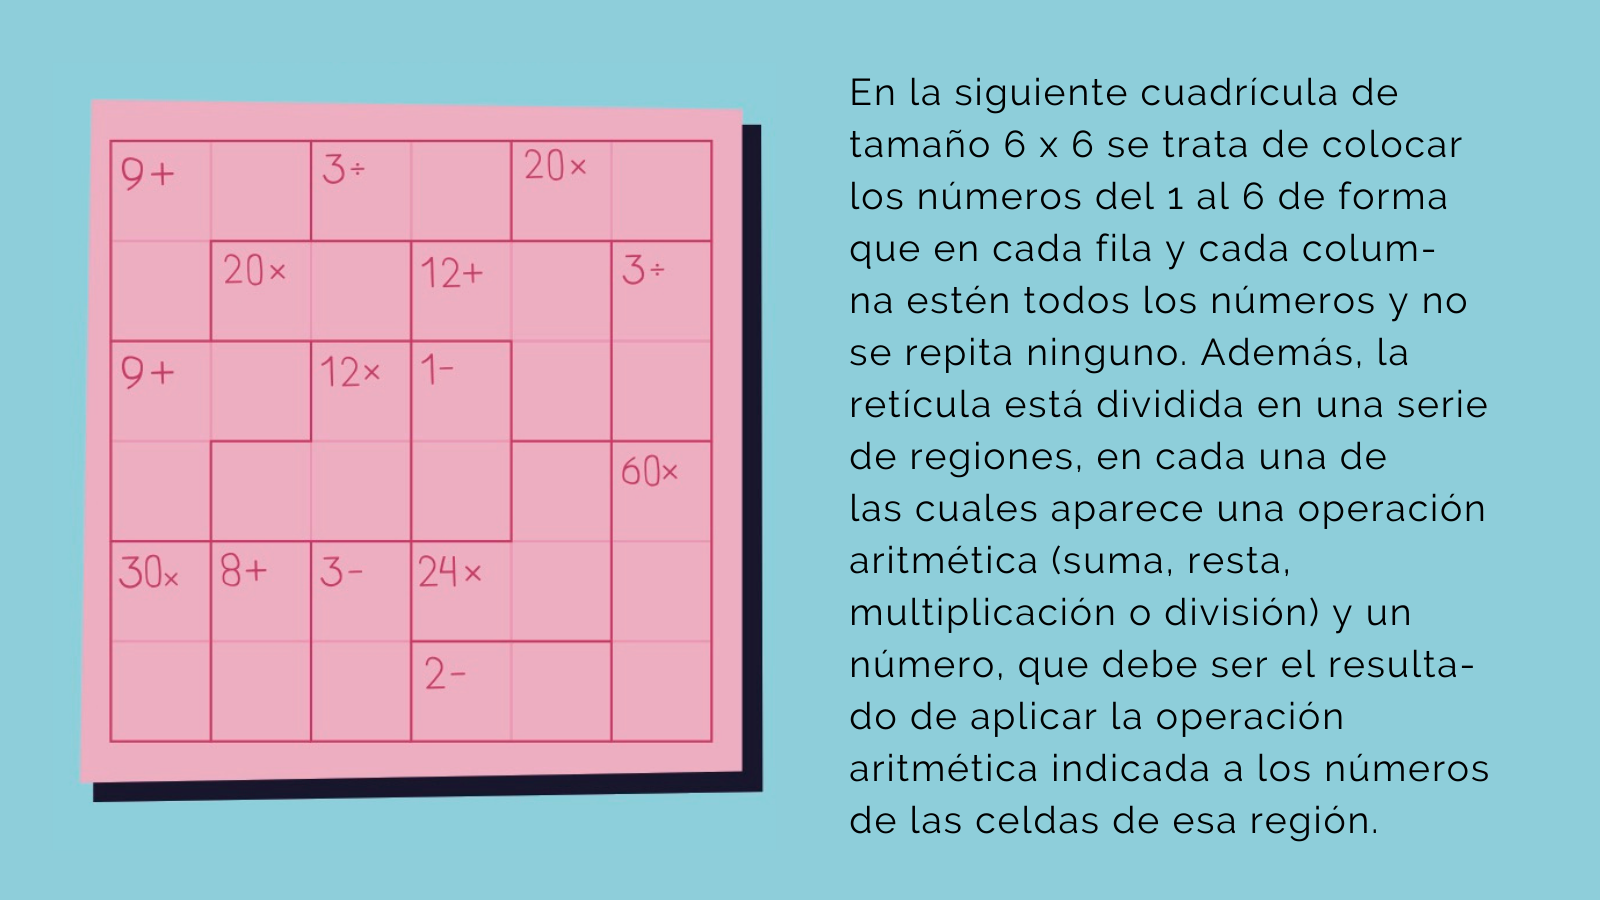 Sudoku para Niños 6 a 12 años: Juegos Educativos Pasatiempos